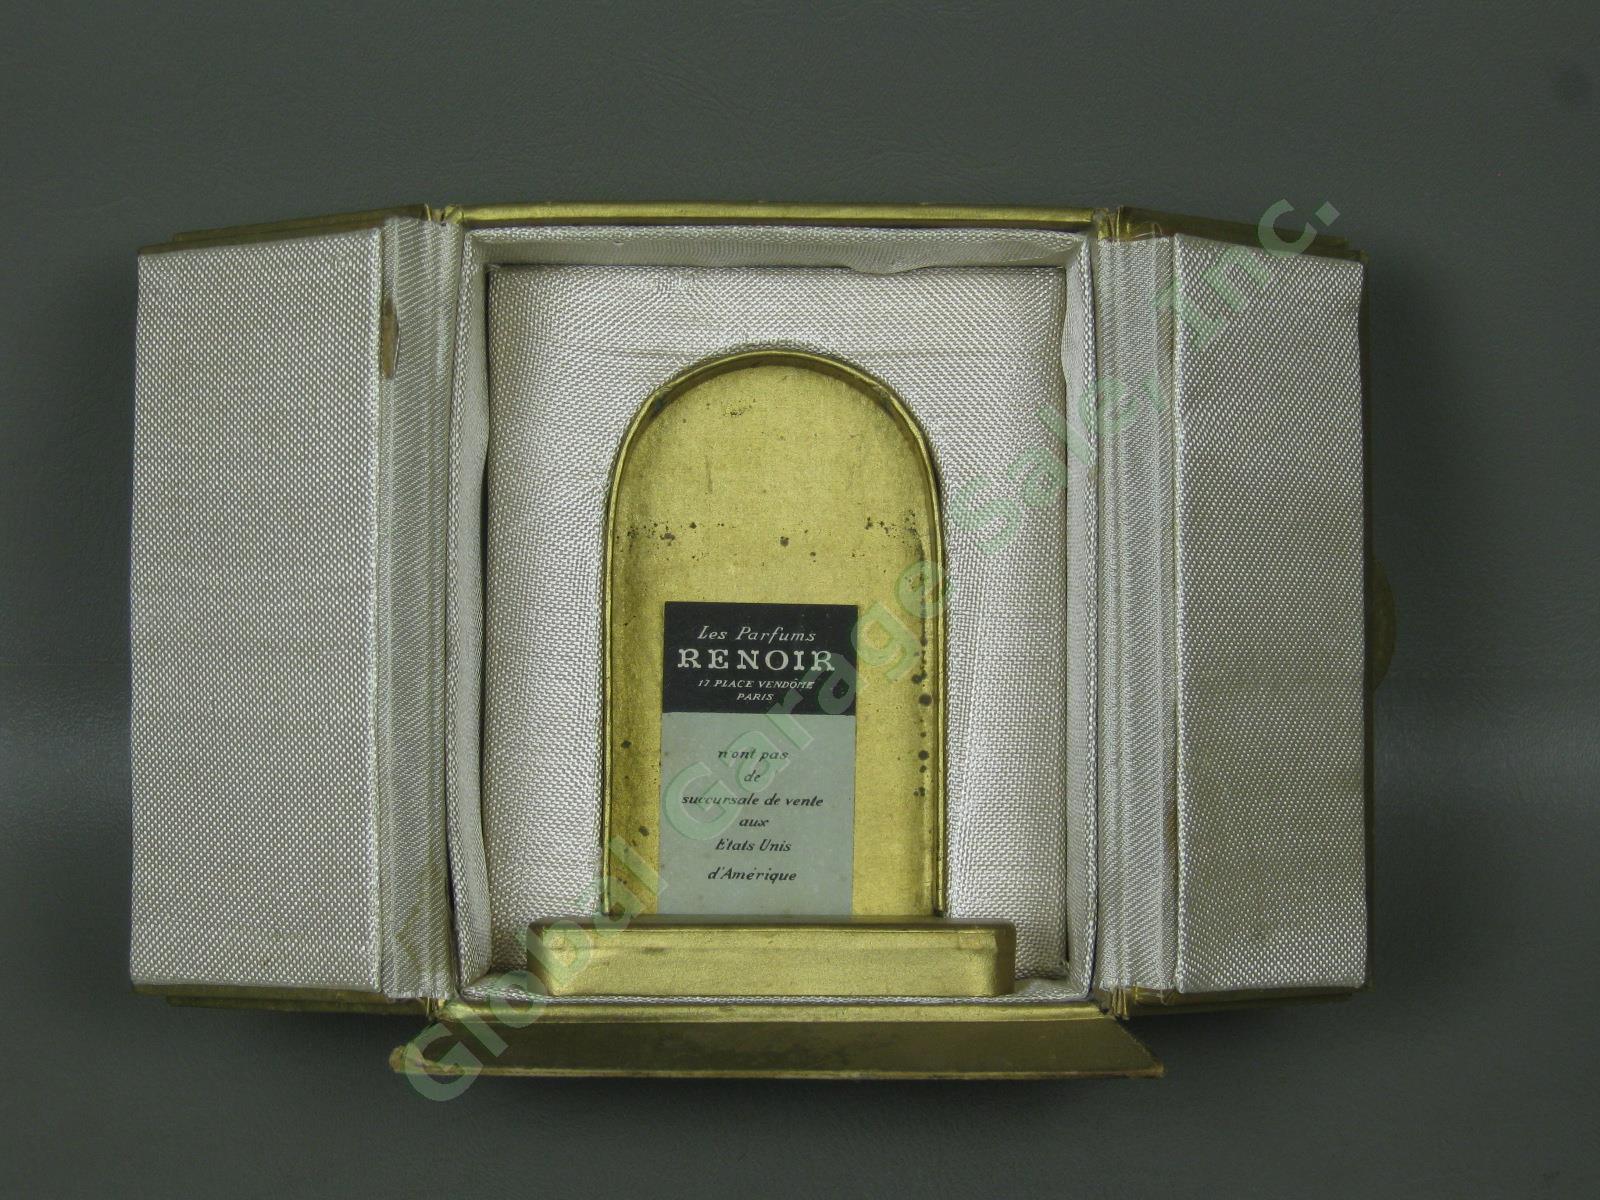 Vtg Antique 3.75" Messager de Renoir Paris Perfume Bottle W/ Stopper/Dauber +Box 5